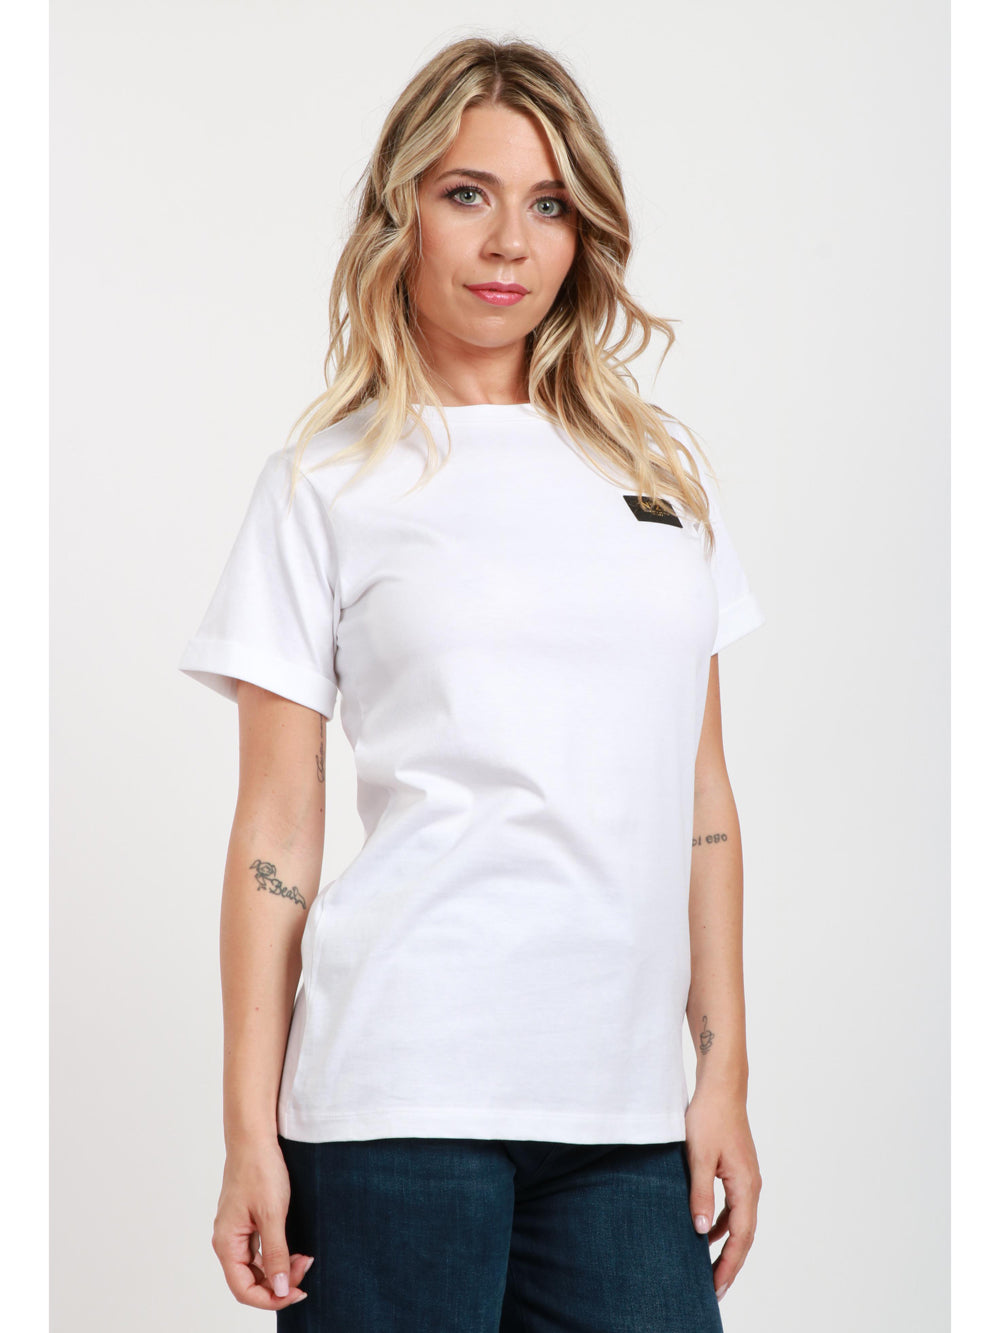 N°21 T-Shirt Girocollo in Cotone Bianca con Etichetta con Logo Bianco ottico